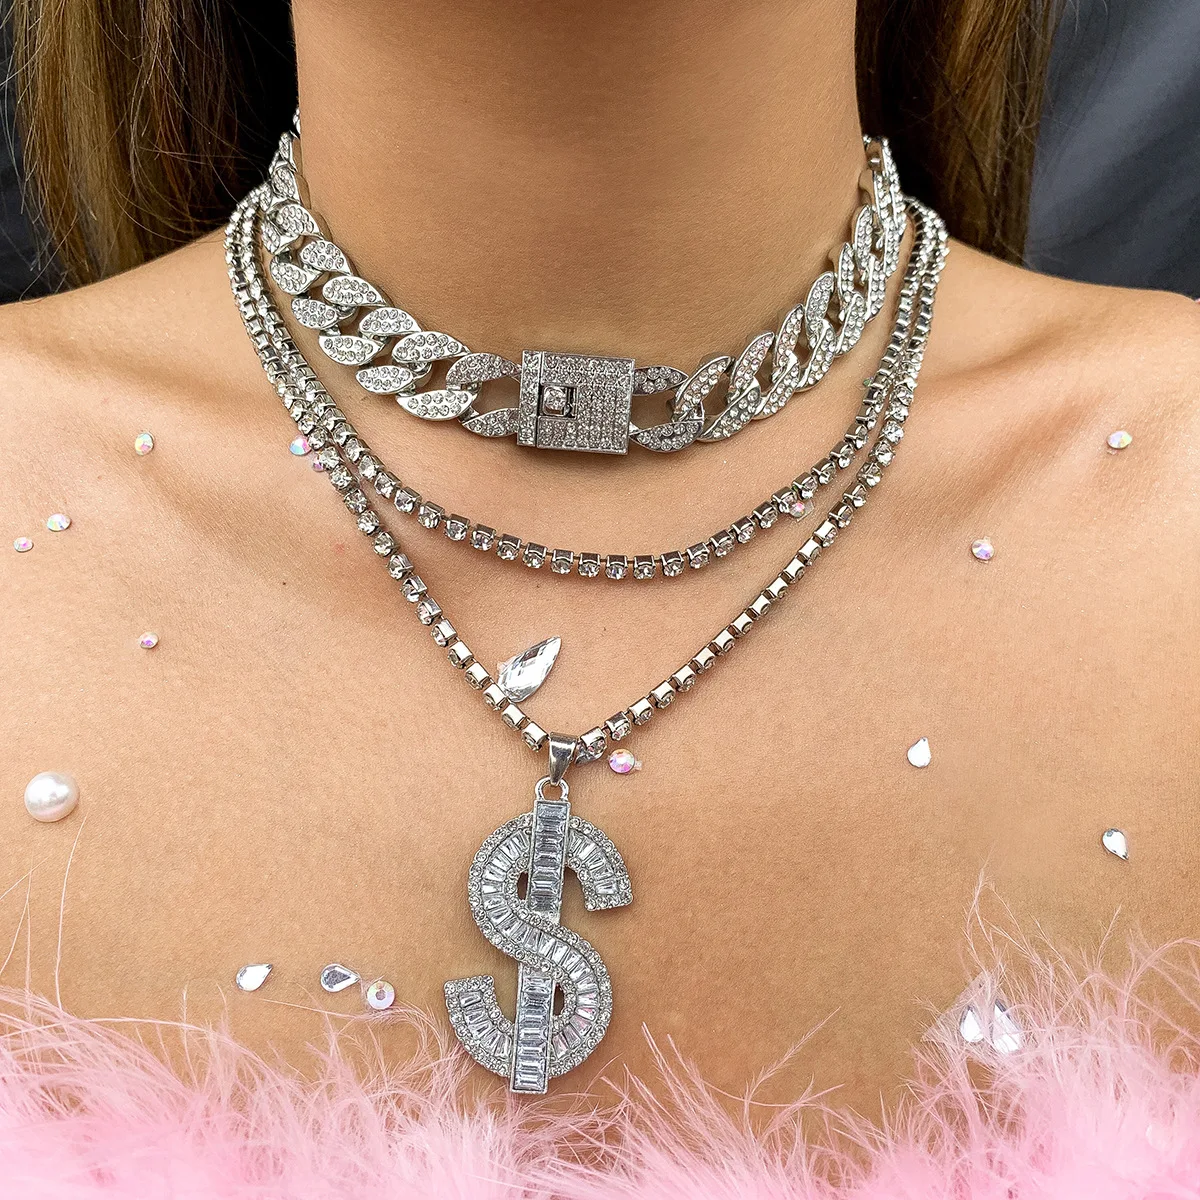 

Punk retro dollar shape flashing diamond pendant necklace hip hop cool Cuban chain necklace set, Picture shows